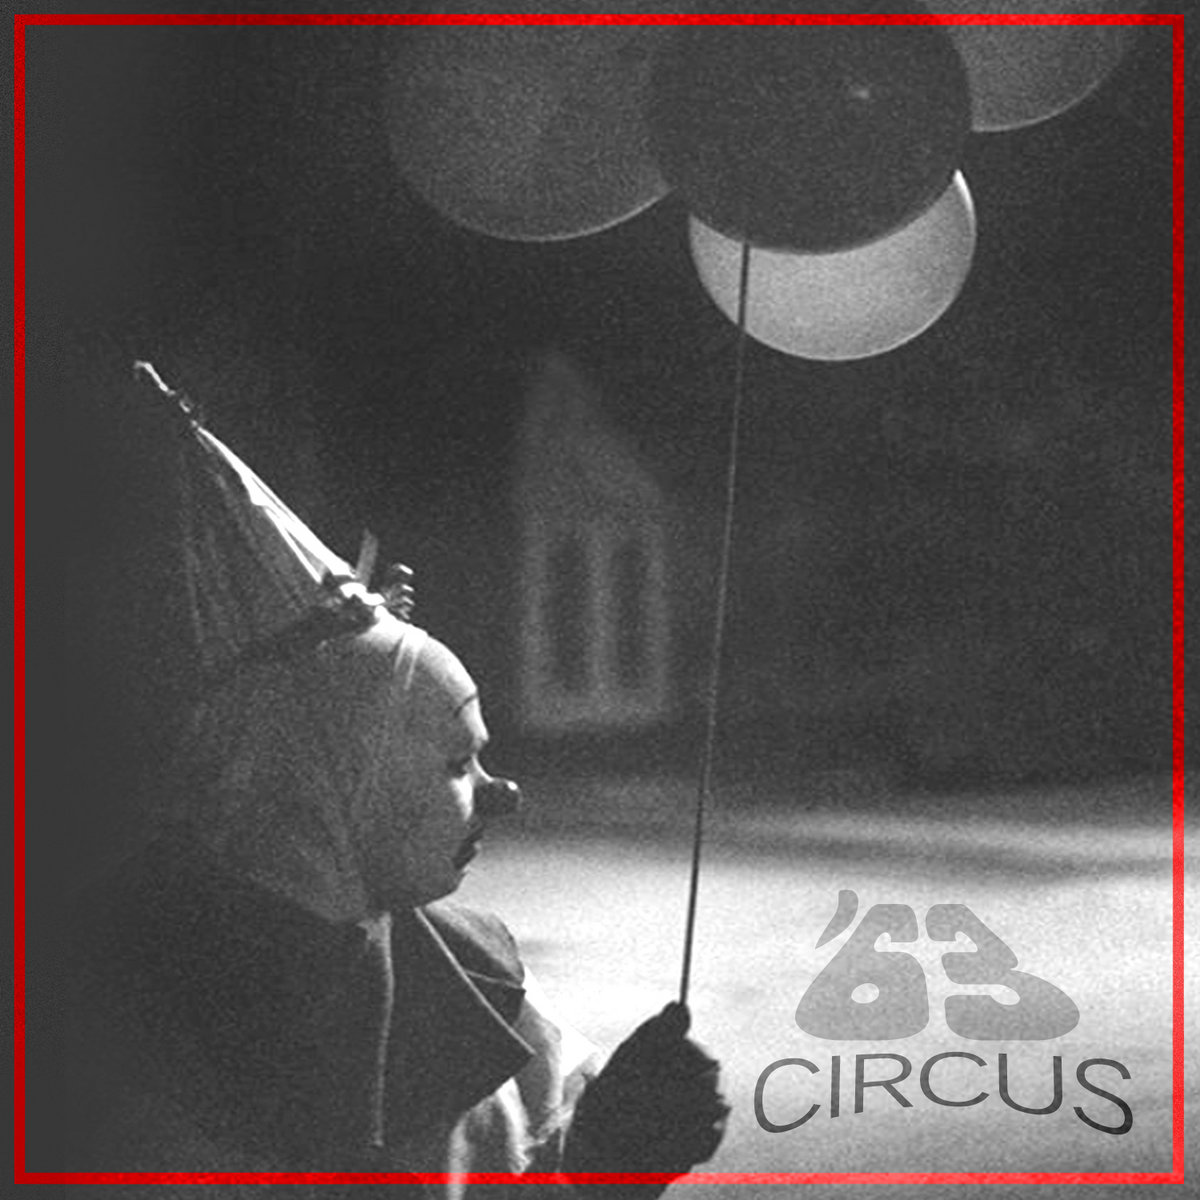 '63 Circus - '63 Circus